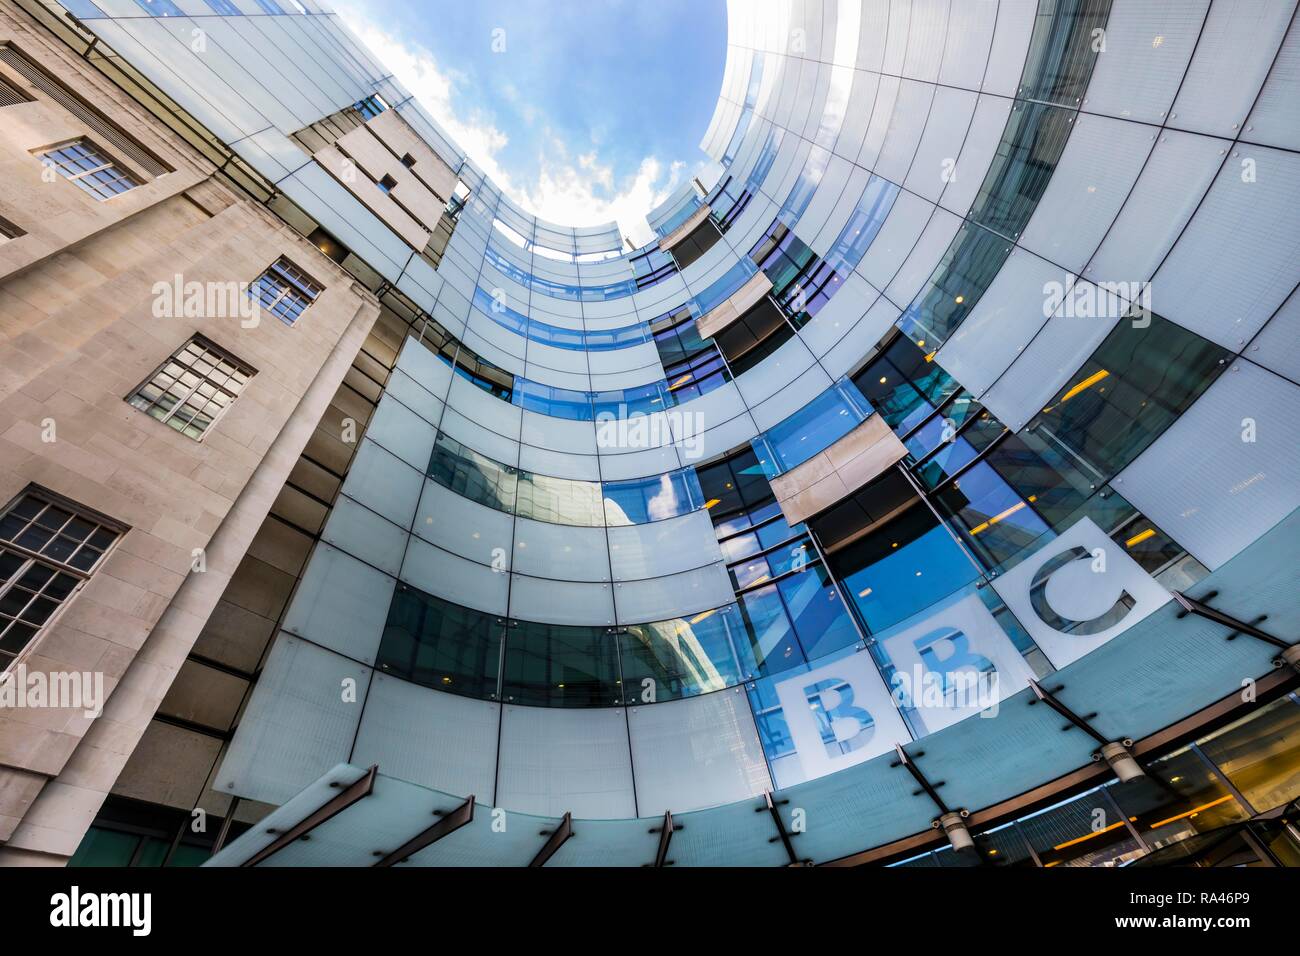 La sede de la emisora de radio y televisión, la BBC Broadcasting House, Londres, Gran Bretaña Foto de stock